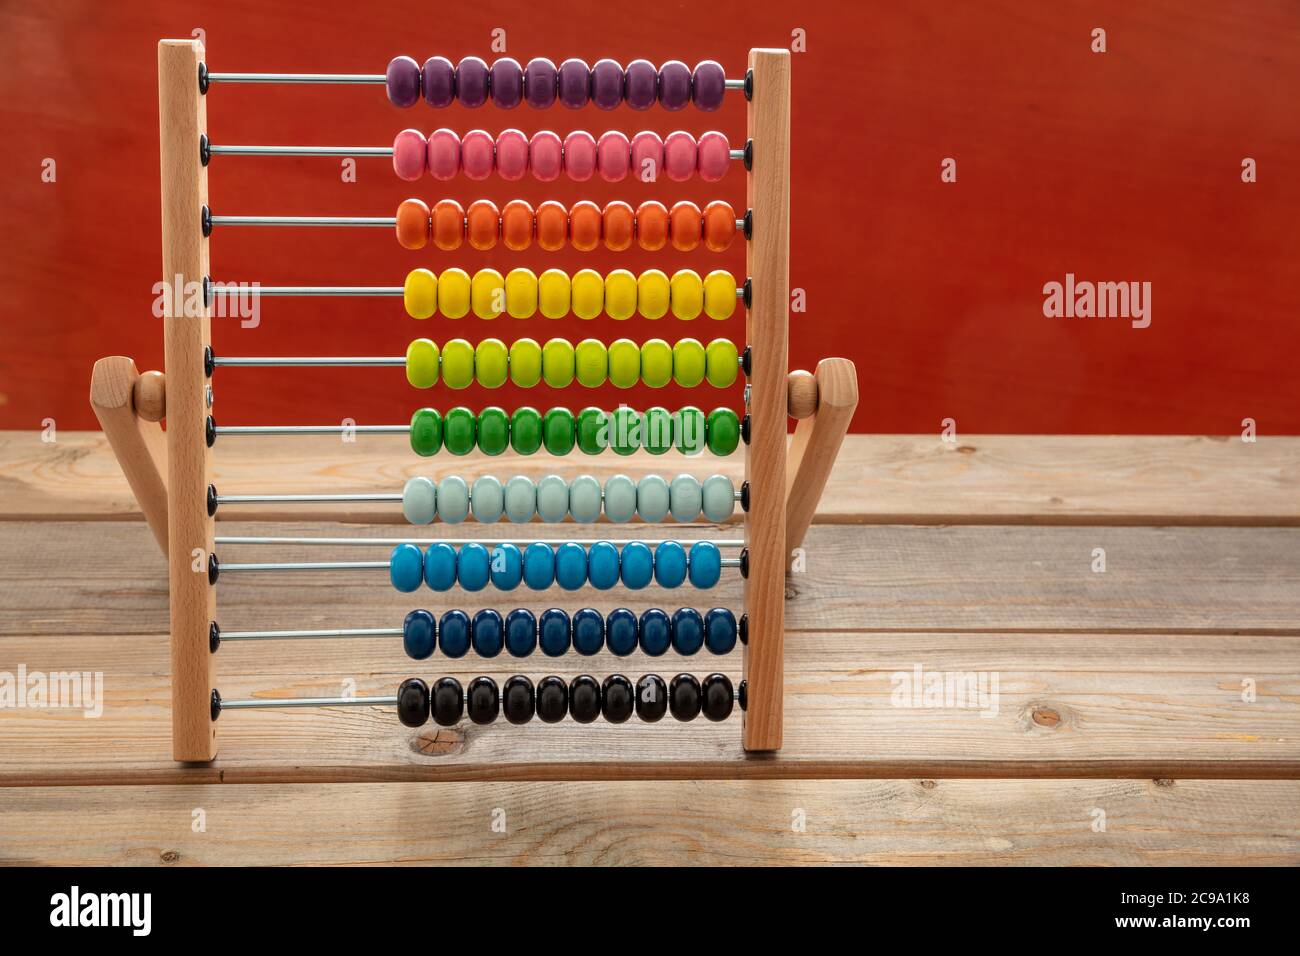 Schule Abacus mit bunten Perlen stehen auf Holzschreibtisch, rote Farbe Wand Hintergrund, Kopie Raum. Kinder lernen zählen, Kinder Mathe Klasse Konzept Stockfoto